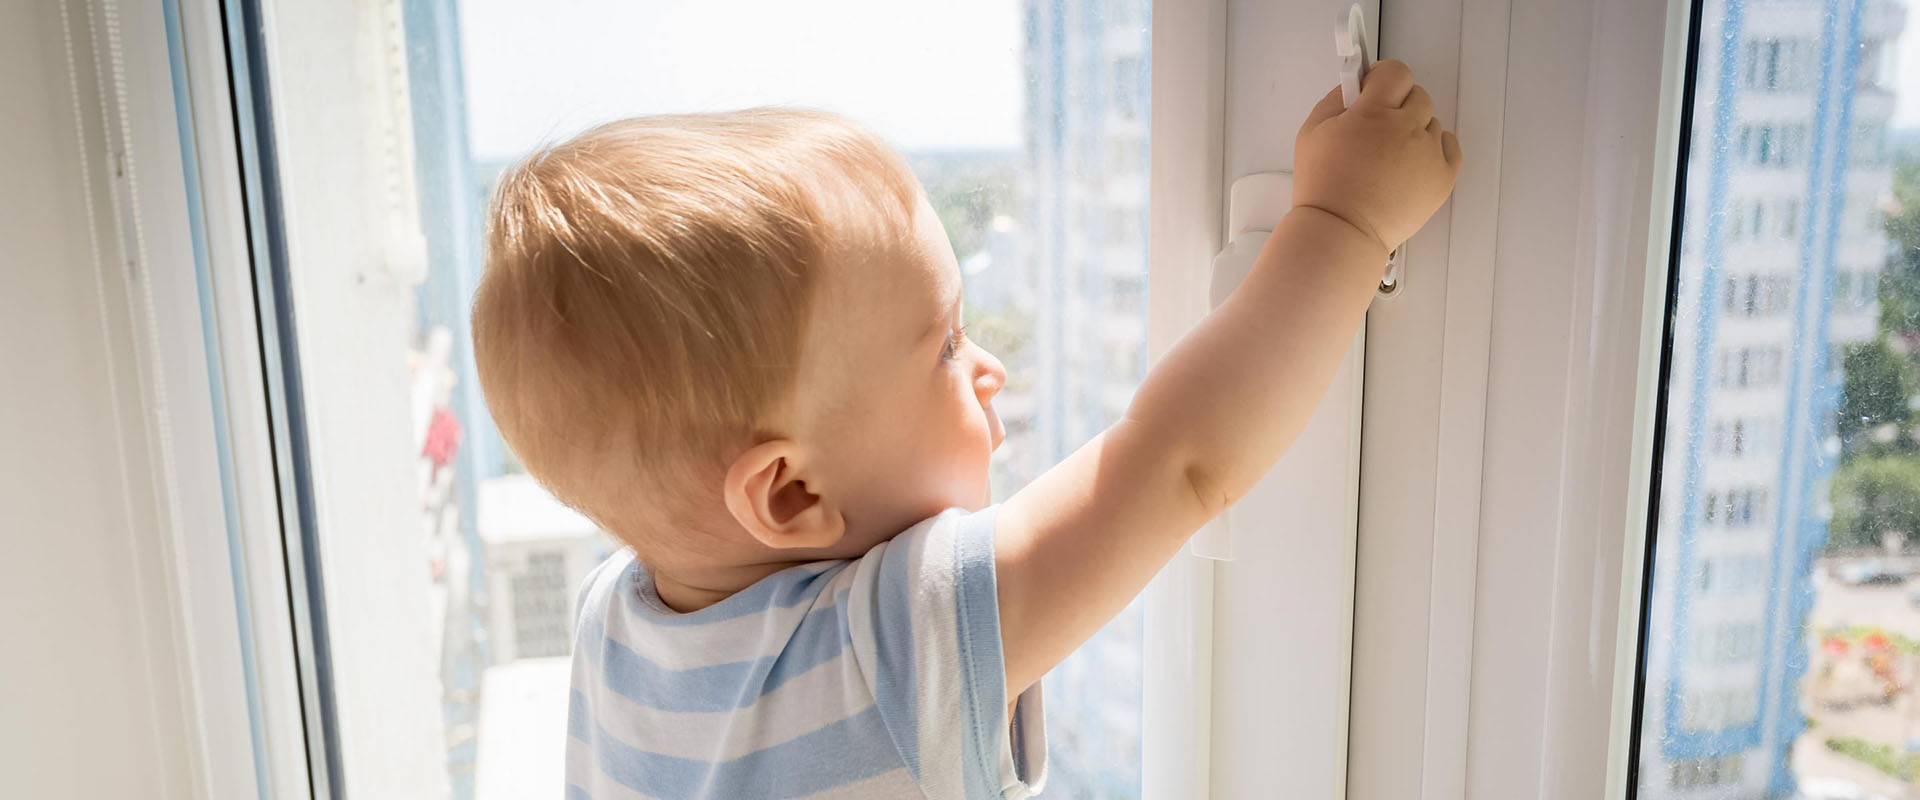 Пластиковые Окна и Безопасность Детей: Как Обеспечить Защиту в Доме